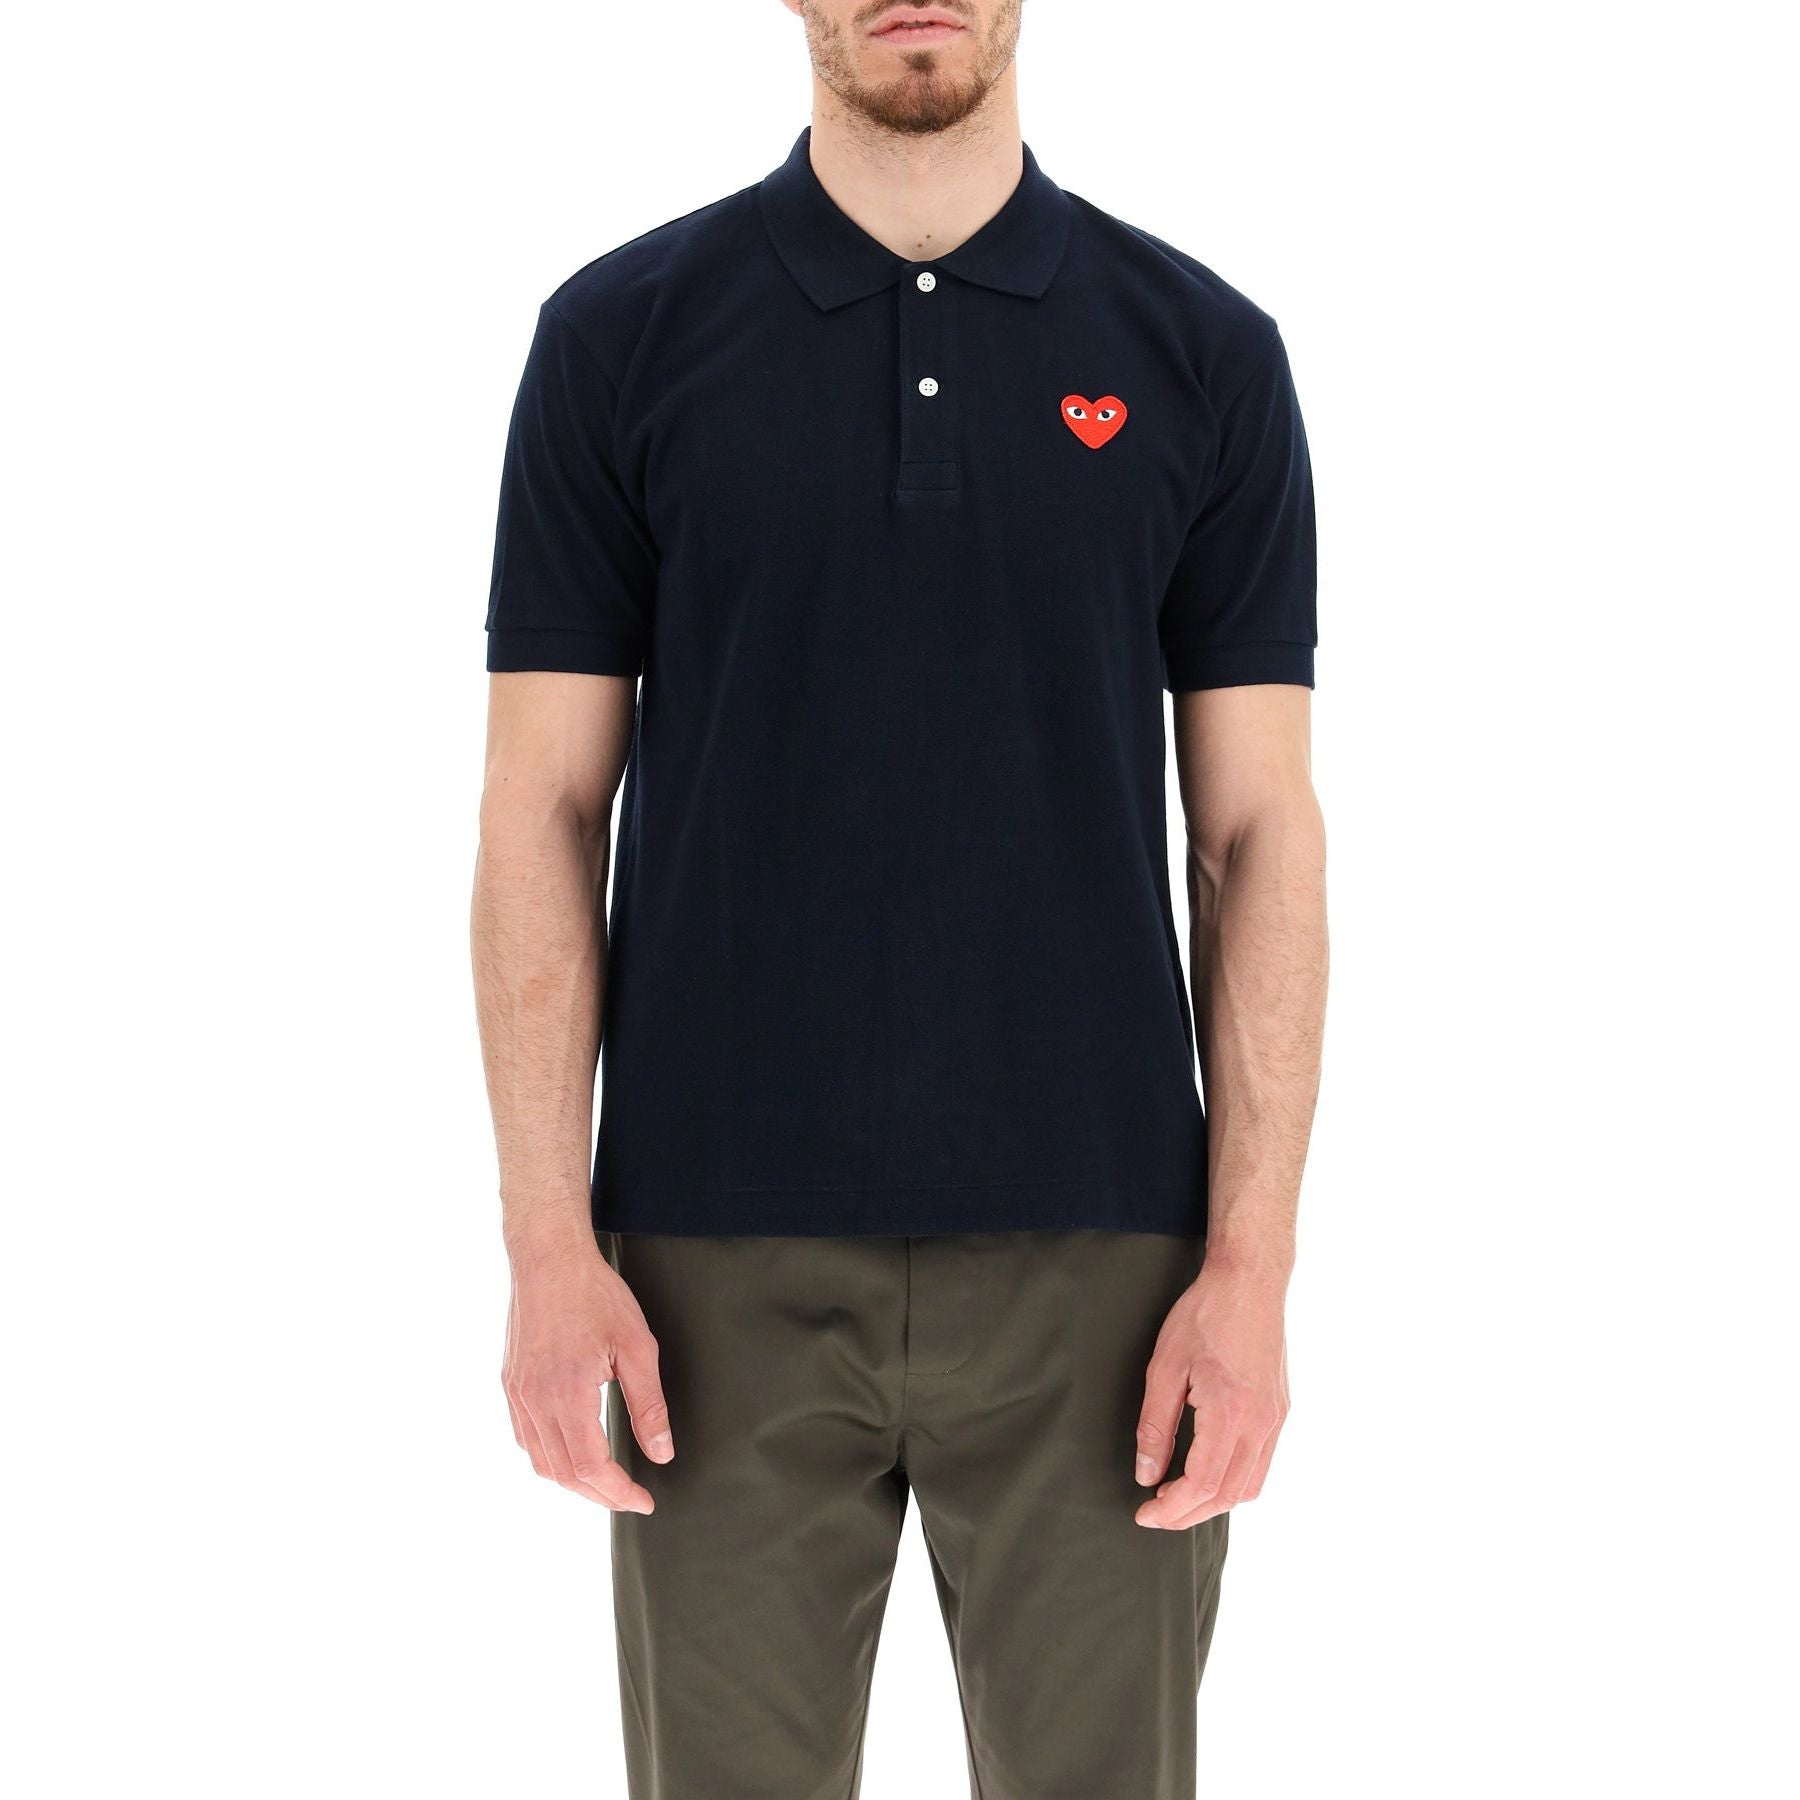 Cotton Piqué Heart Polo Shirt